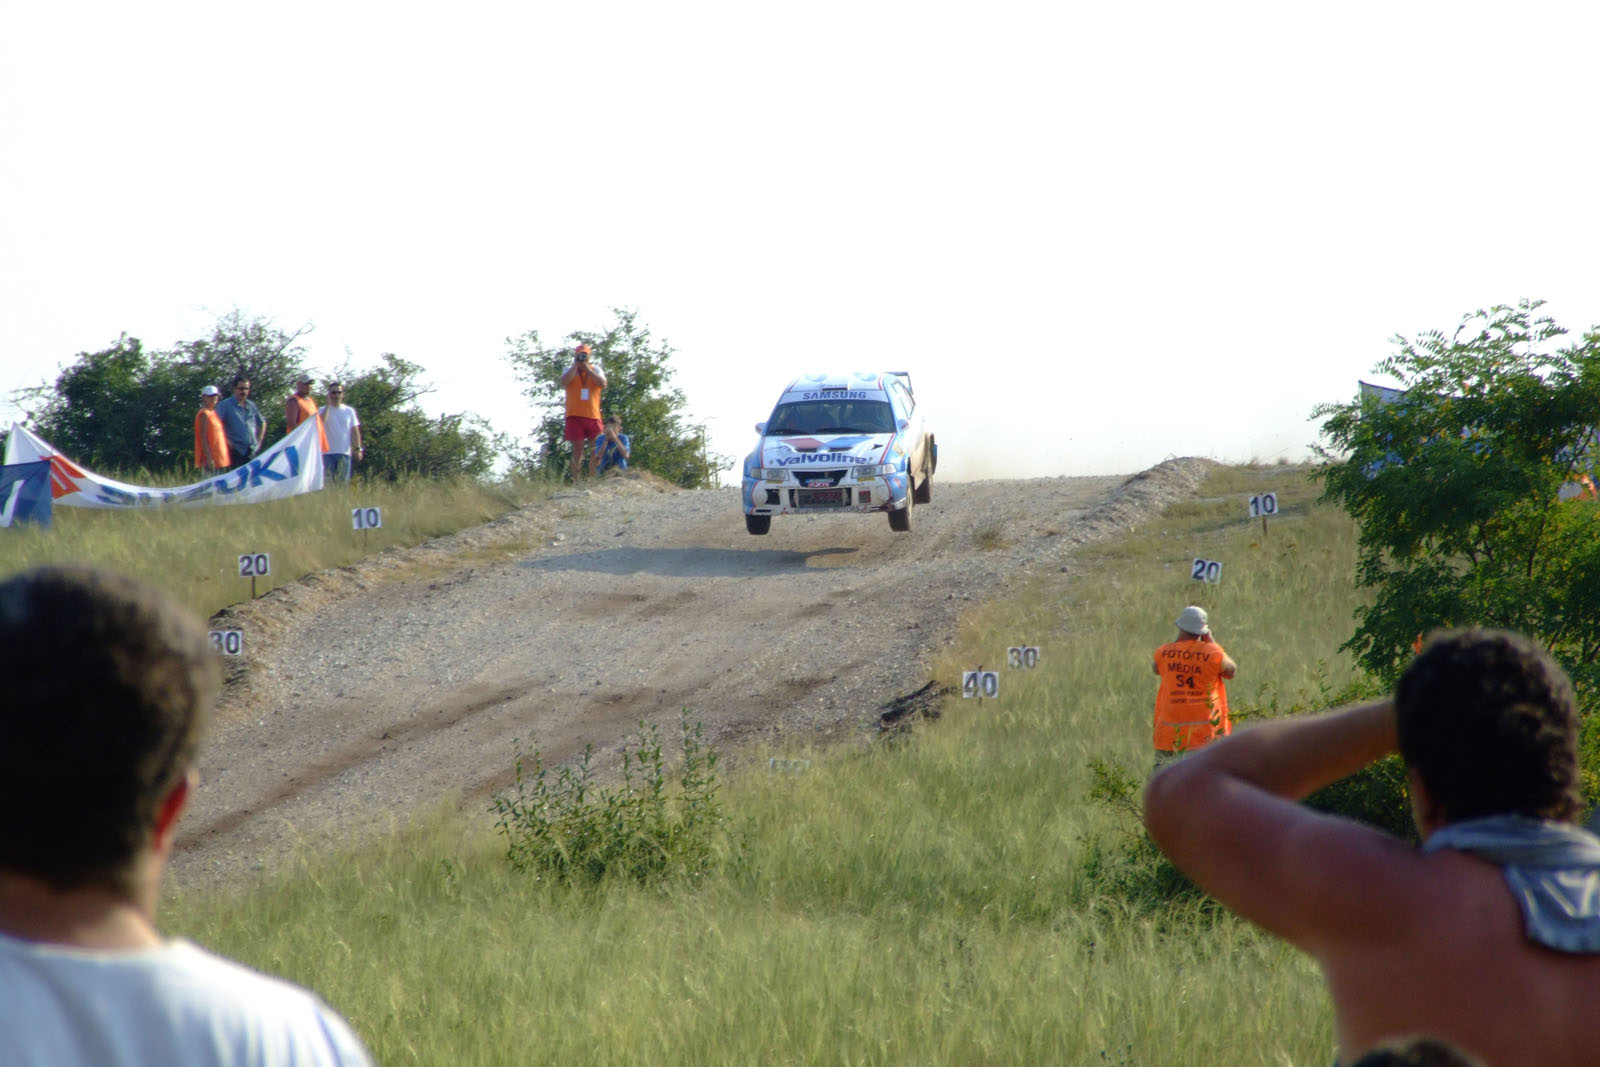 Veszprém Rally 2006 (DSCF4546)